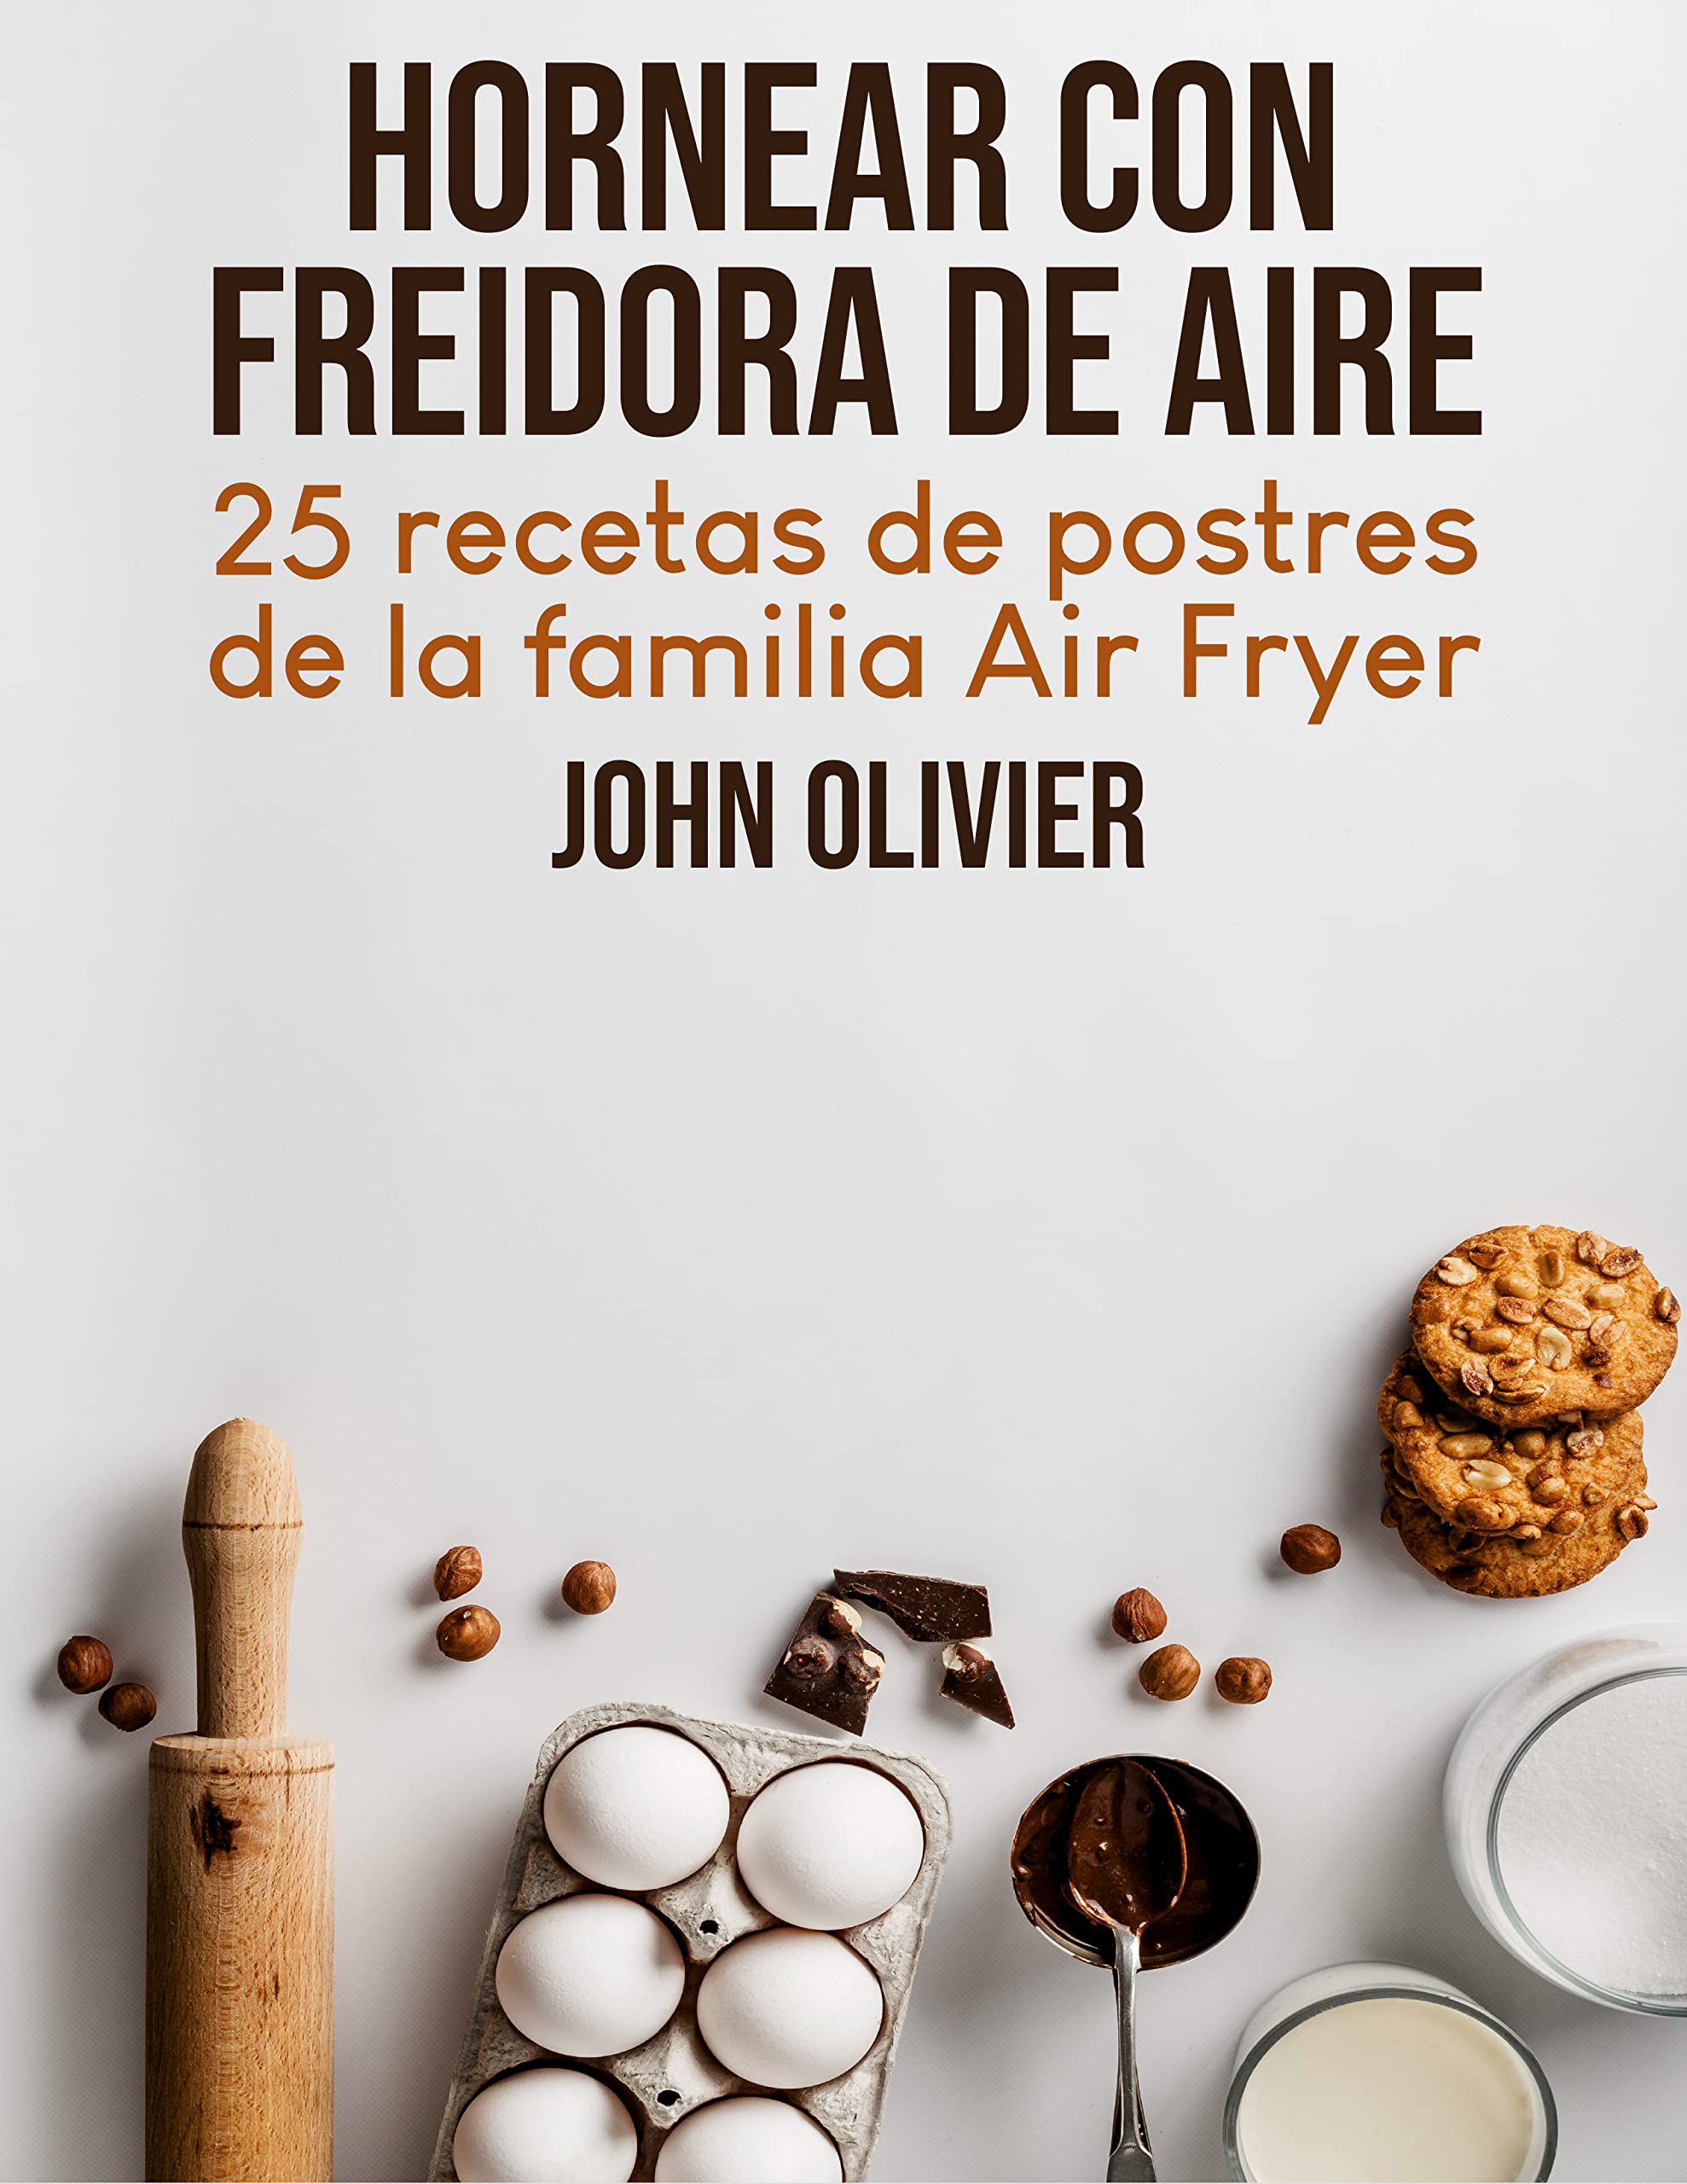 Hornear Con Freidora De Aire: 25 Recetas De Postres De La Familia Air Fryer (Spanish Edition)